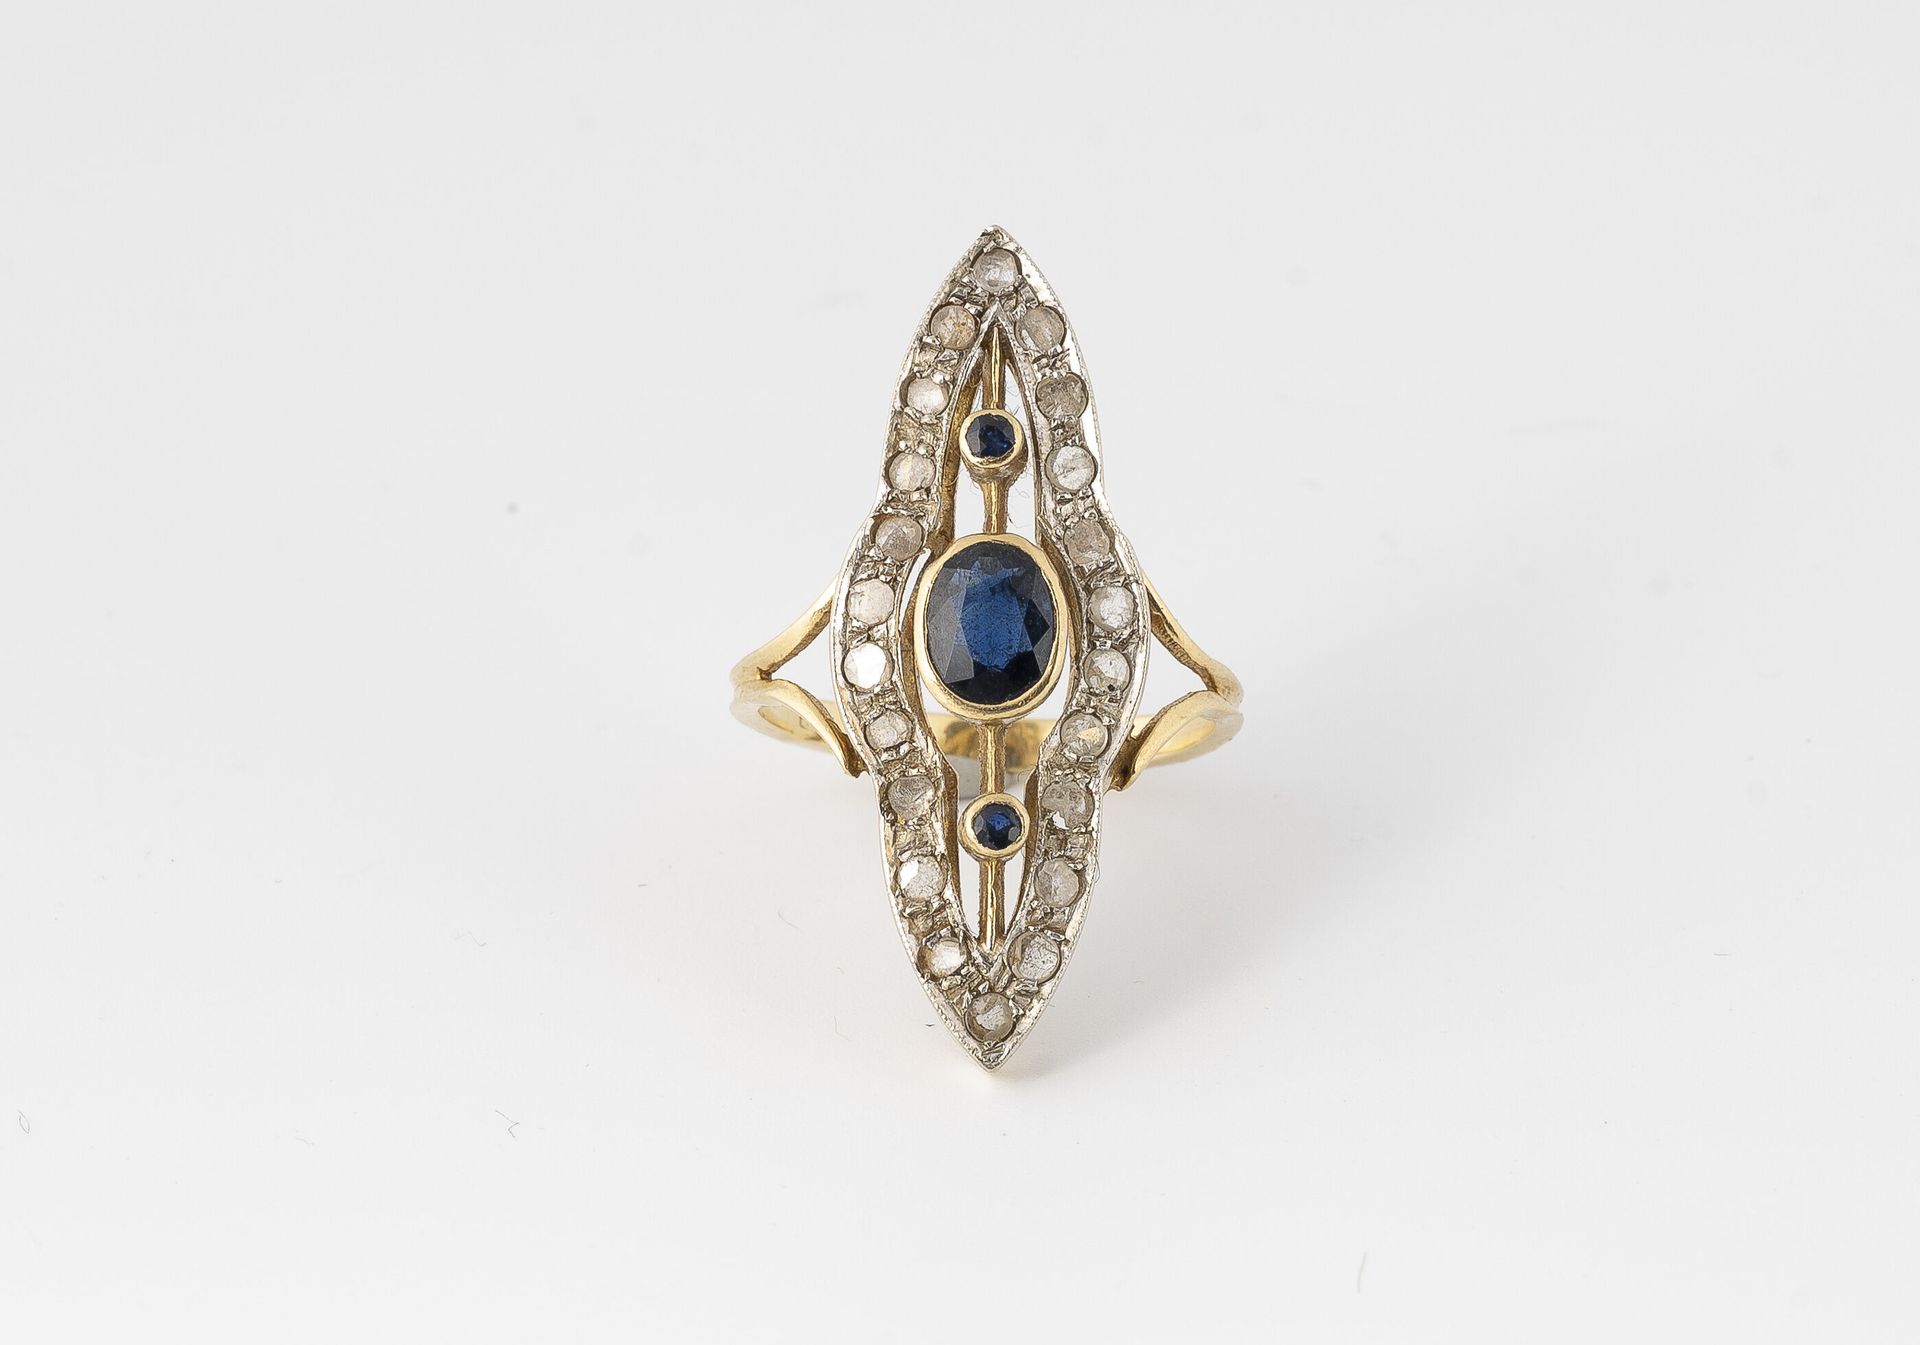 Null 黄金（750）曼陀罗形戒指，以种子镶嵌的方式铺设玫瑰式切割钻石，以封闭式镶嵌的一排椭圆形和圆形蓝宝石为中心。

1920-1930年的工作。

毛重：&hellip;